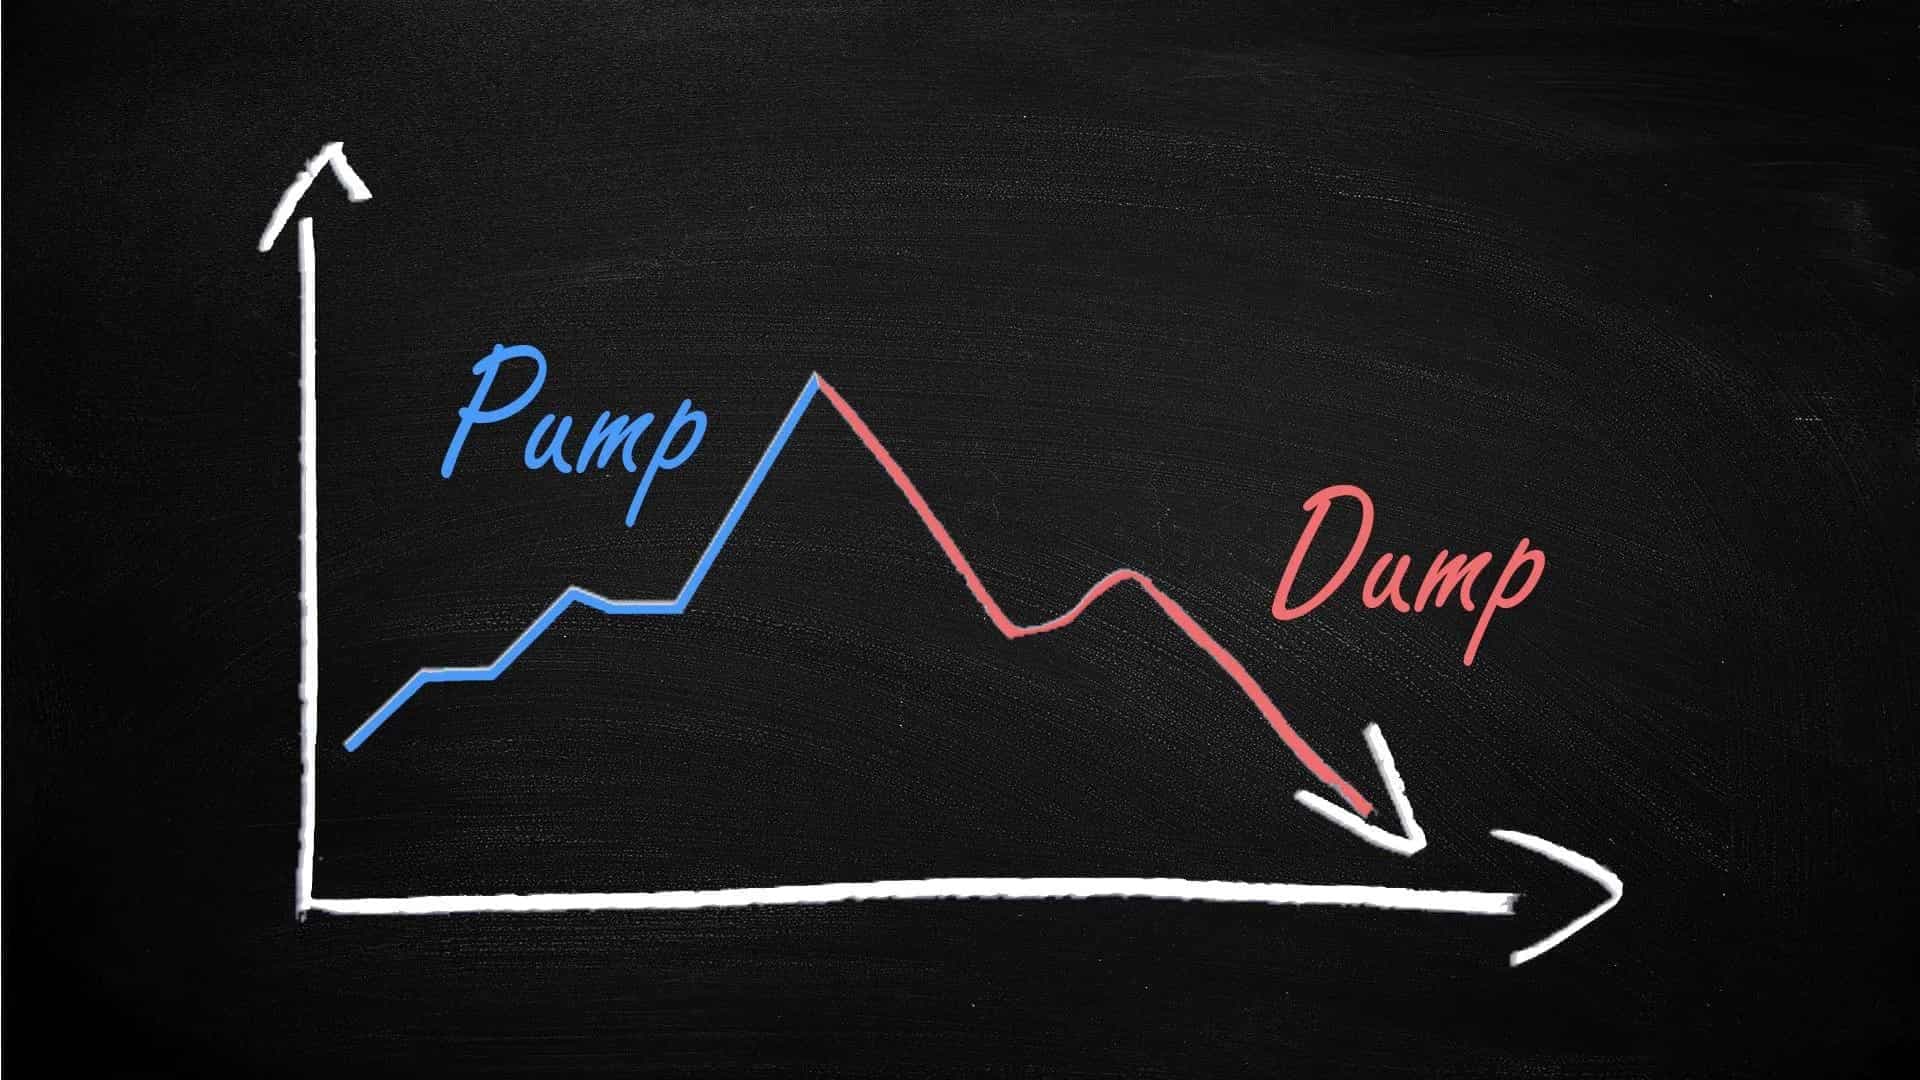 پامپ و دامپ (Pump & Dump) در ارزهای دیجیتال